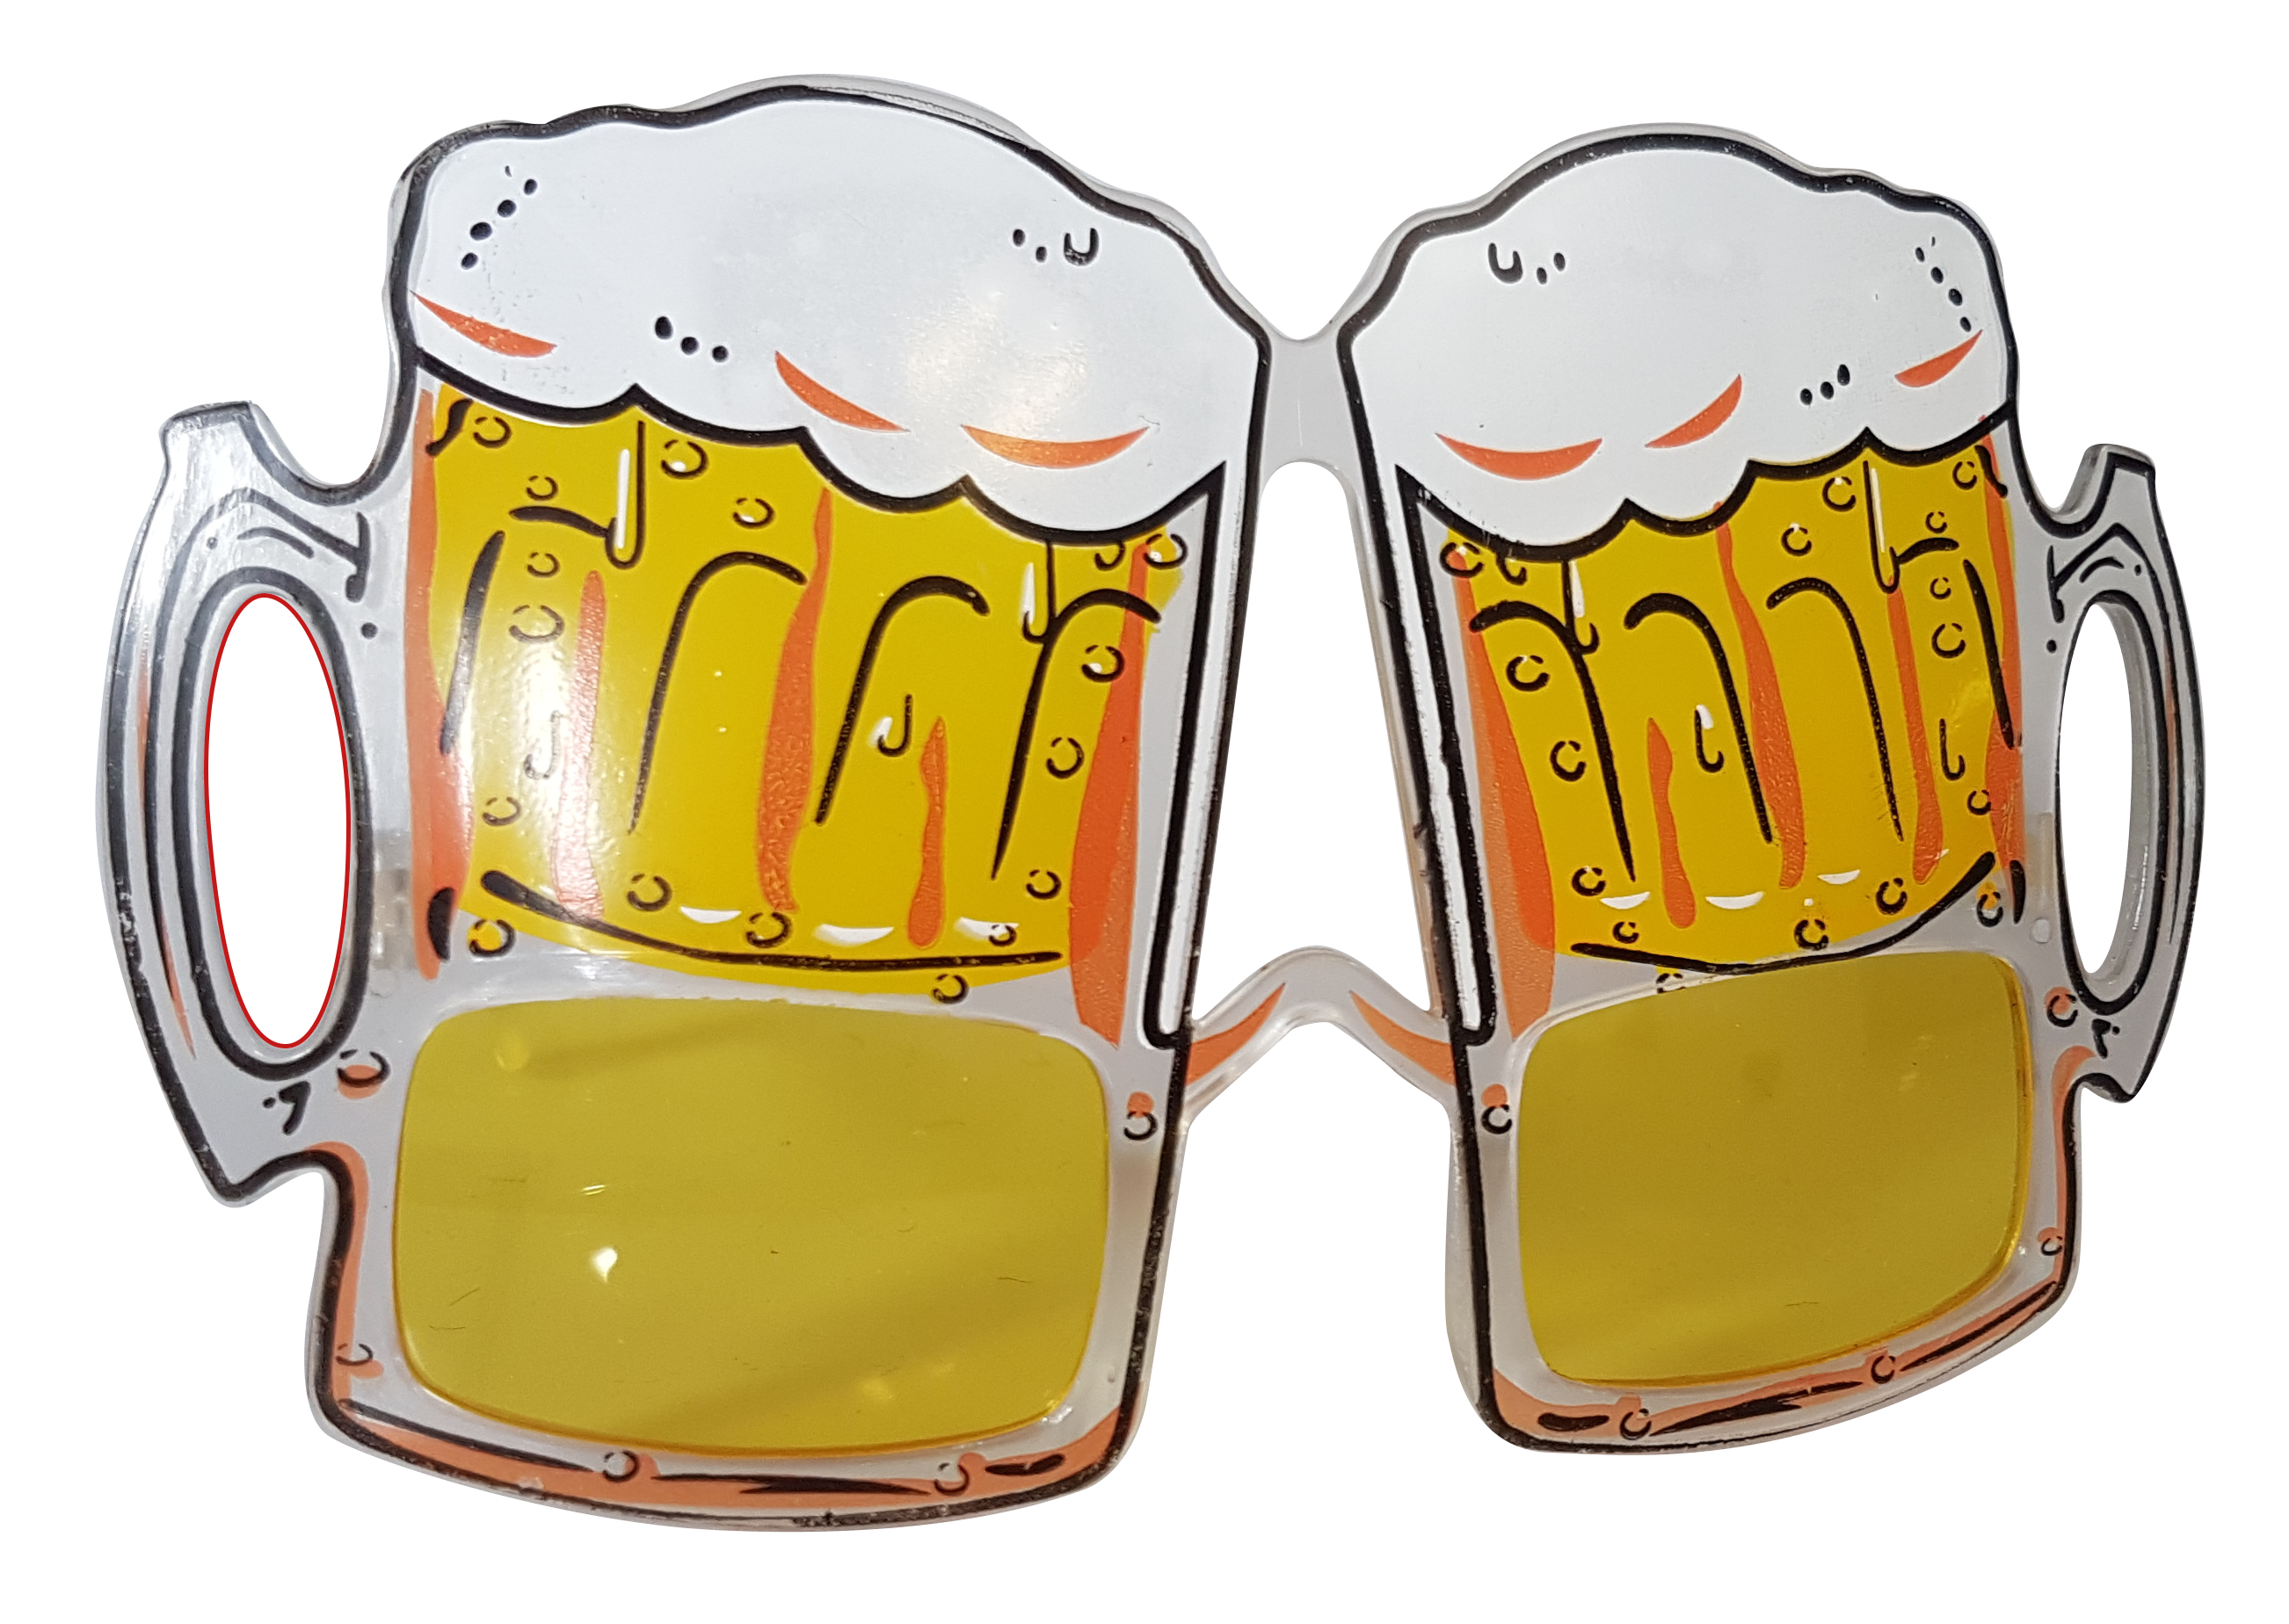 Bier Party Brille / Motiv Sonnenbrille